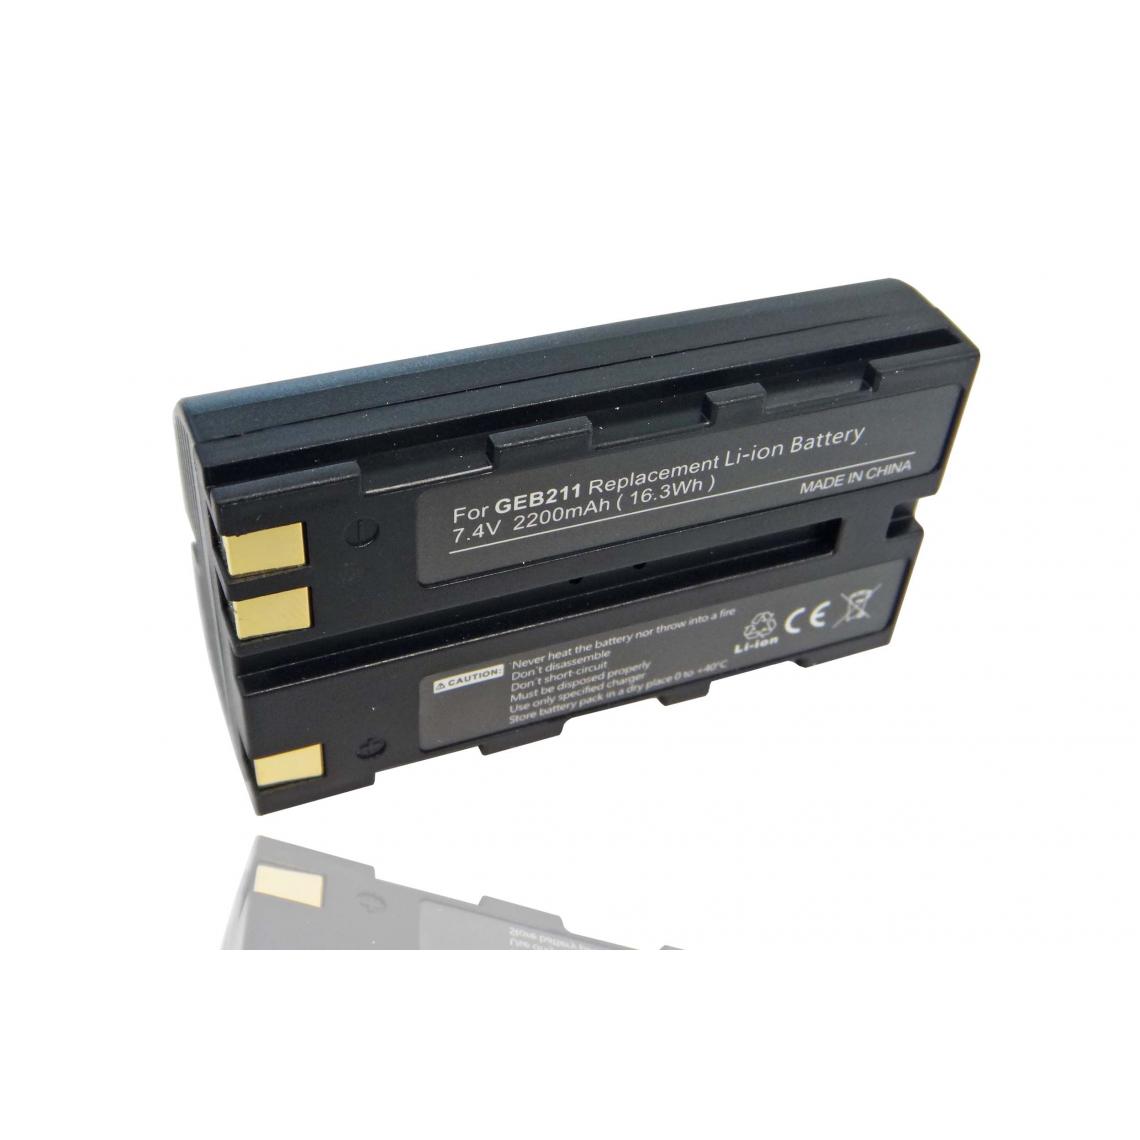 Vhbw - vhbw Batterie compatible avec Leica GNSS receiver, GPS1200 dispositif de mesure laser, outil de mesure (2200mAh, 7,4V, Li-ion) - Piles rechargeables